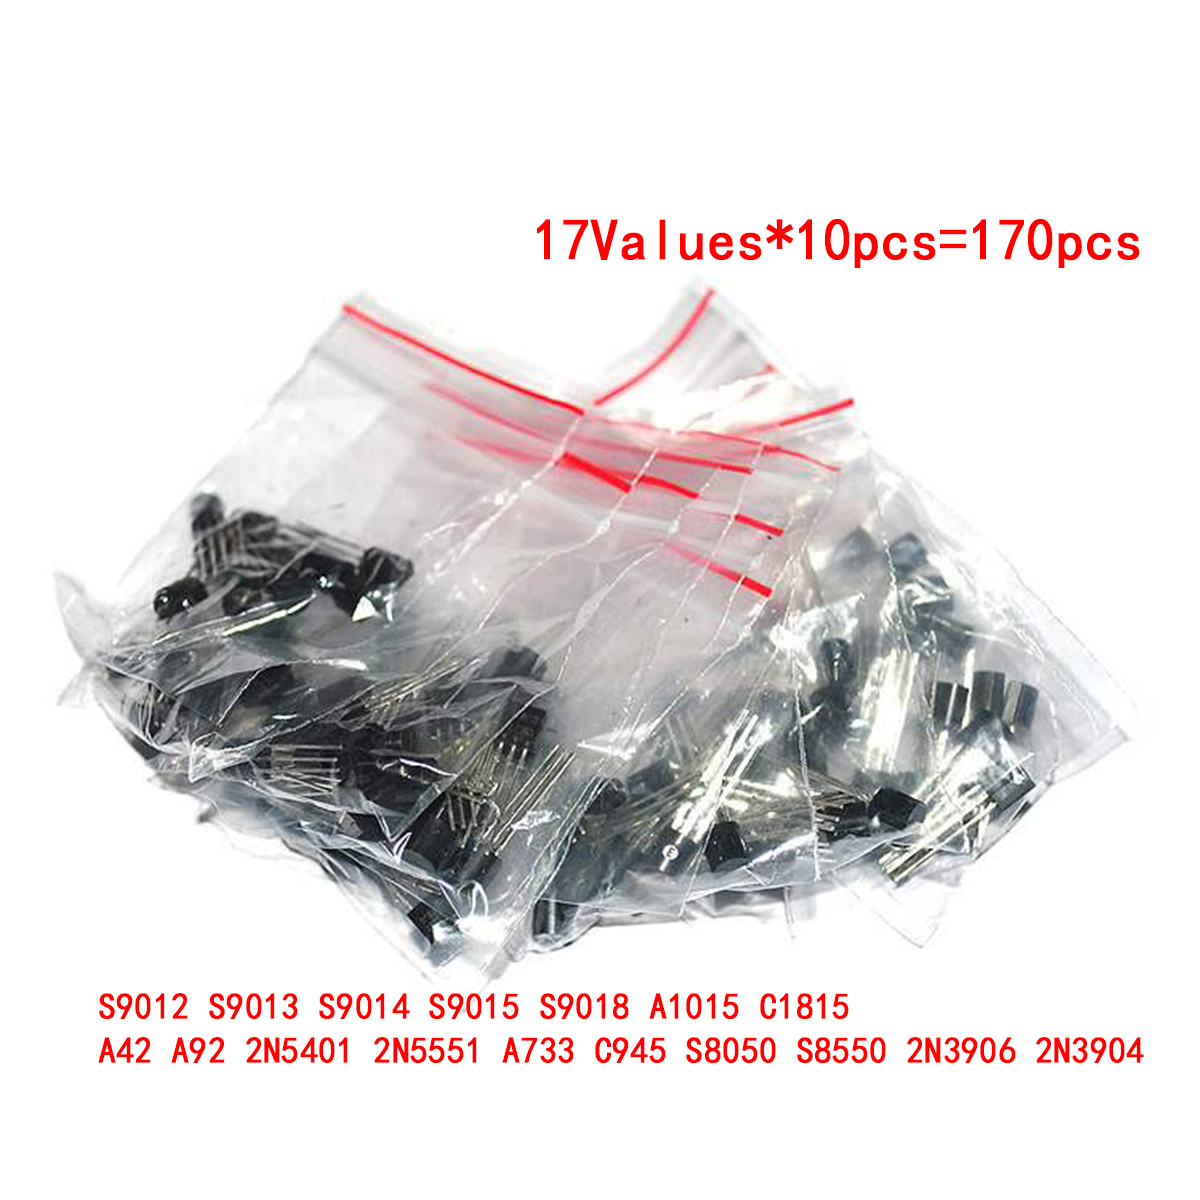 Transistor Assorted Kit S9012 S9013 S9014 S9015 S9018 A1015 C1815 A42 A92 2N5401 2N5551 A733 C945 S8050 S8550 2N3906 2N3904